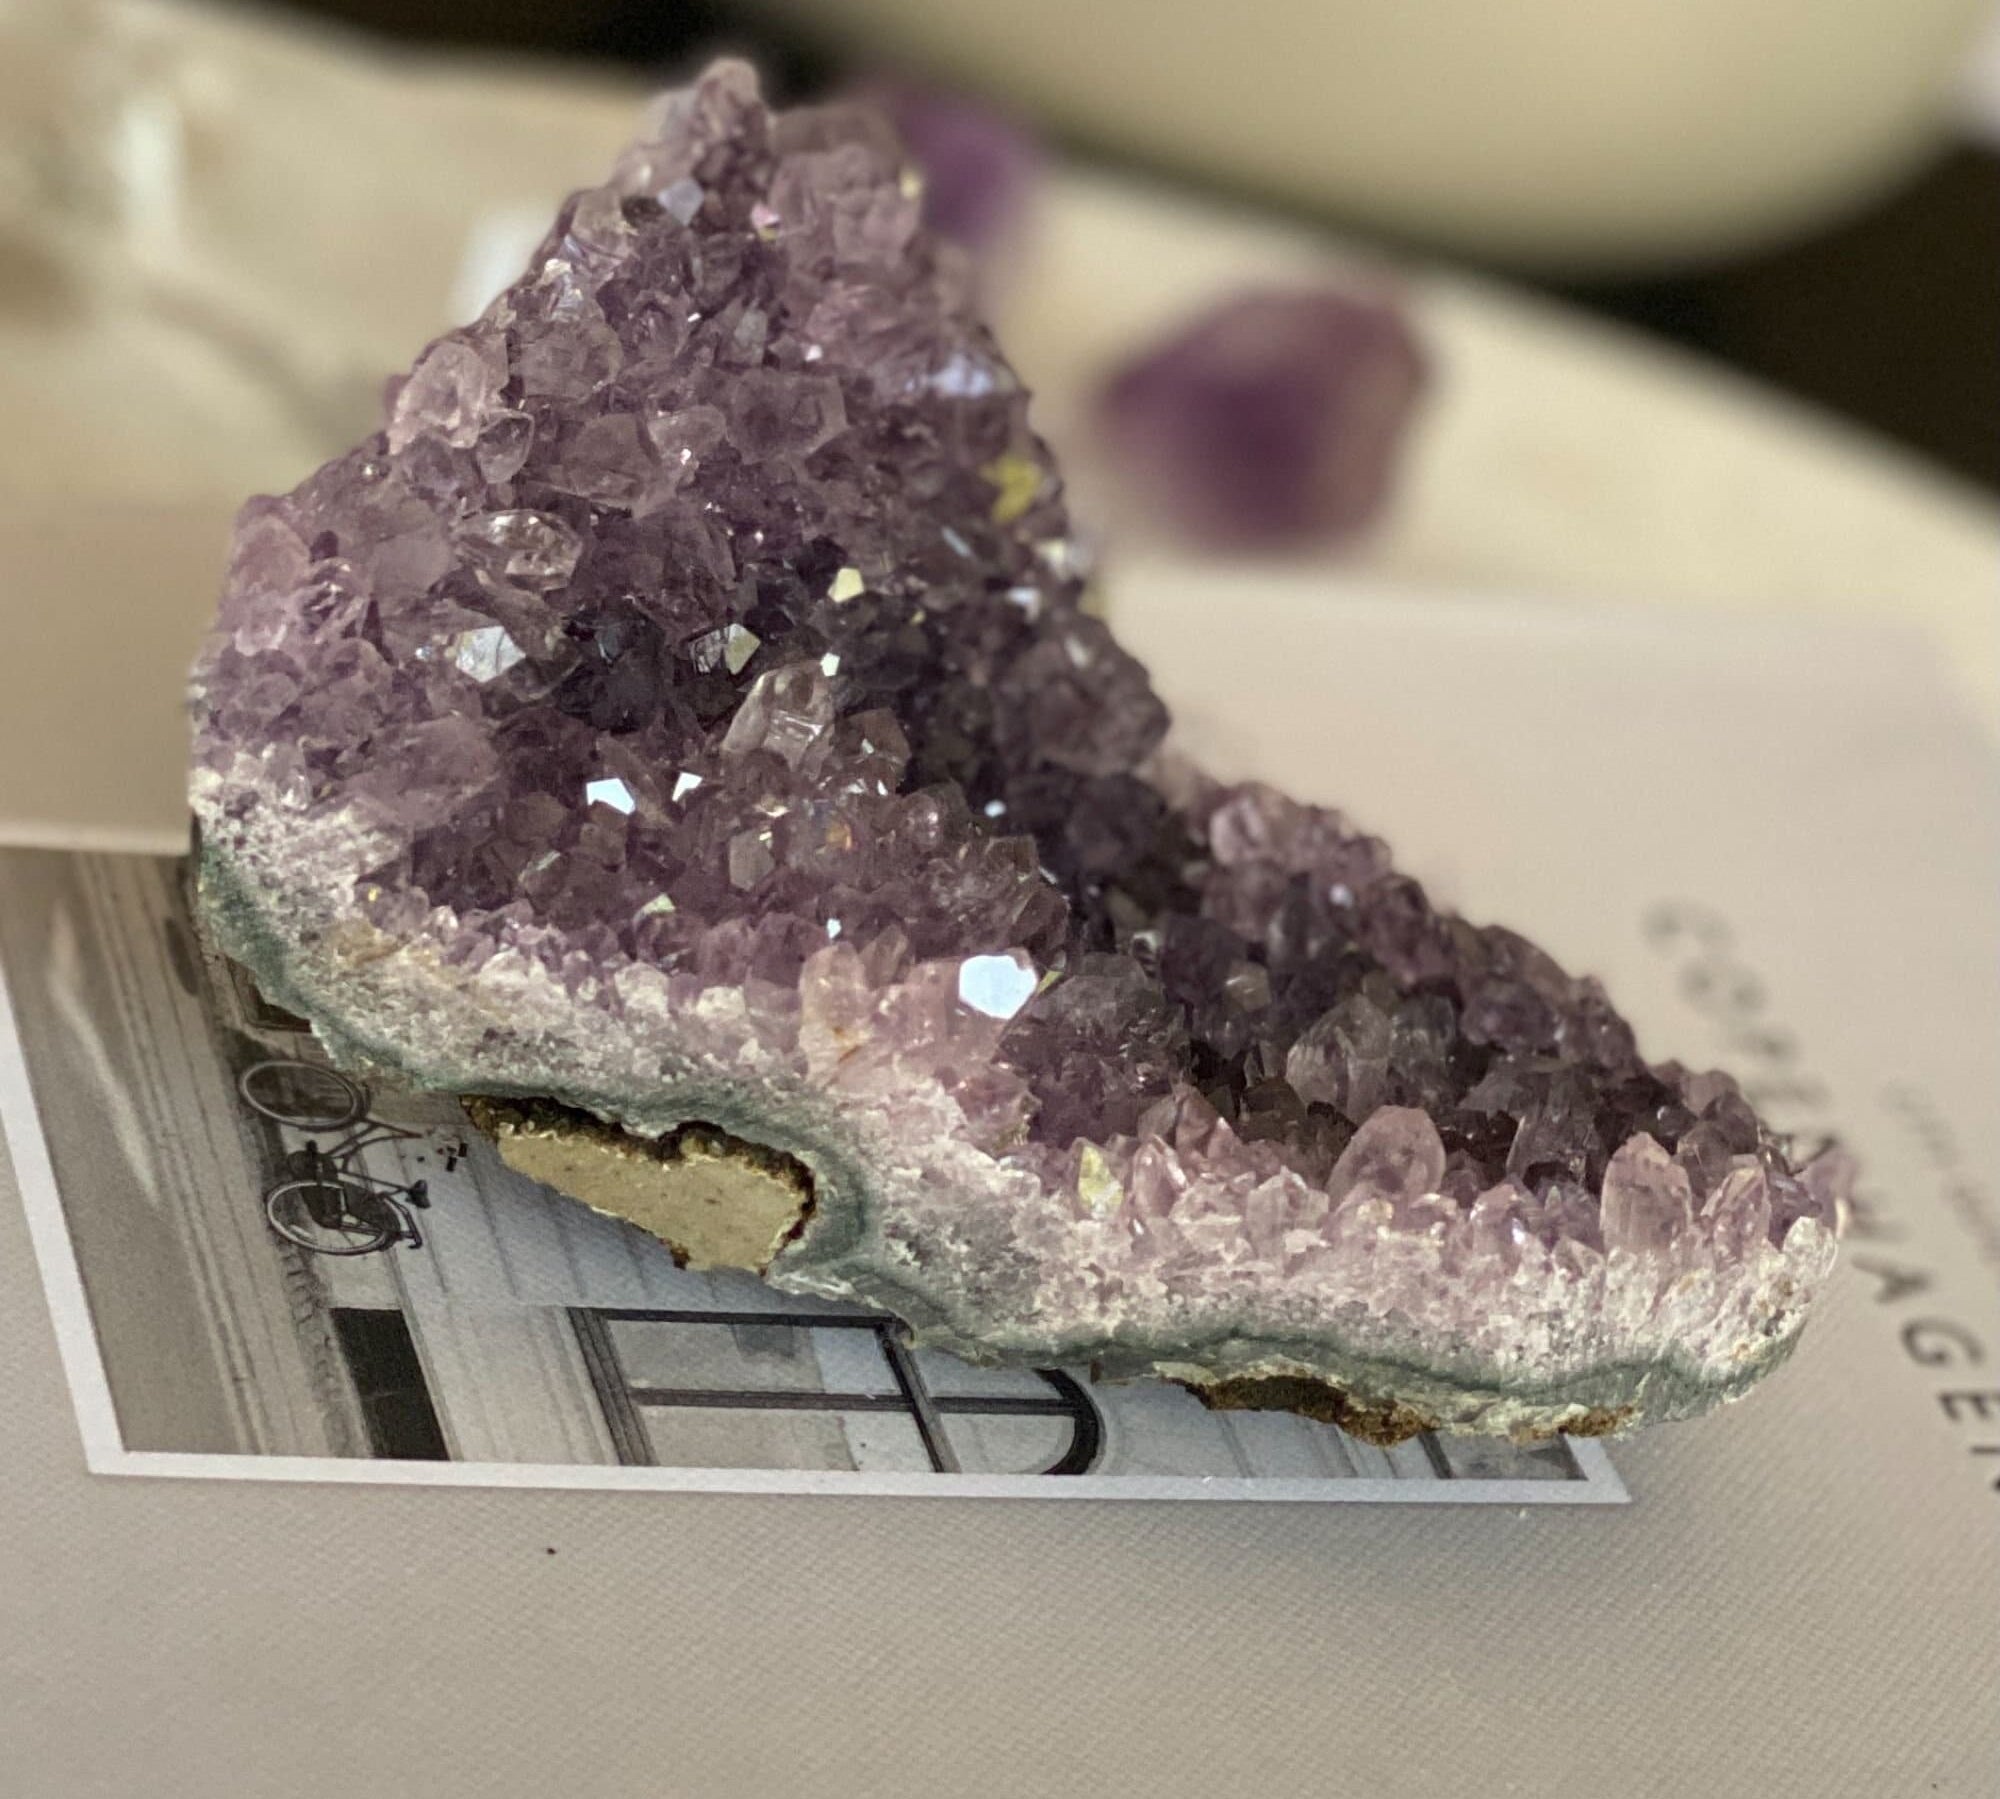 Flat amethyst raw purple crystal cluster